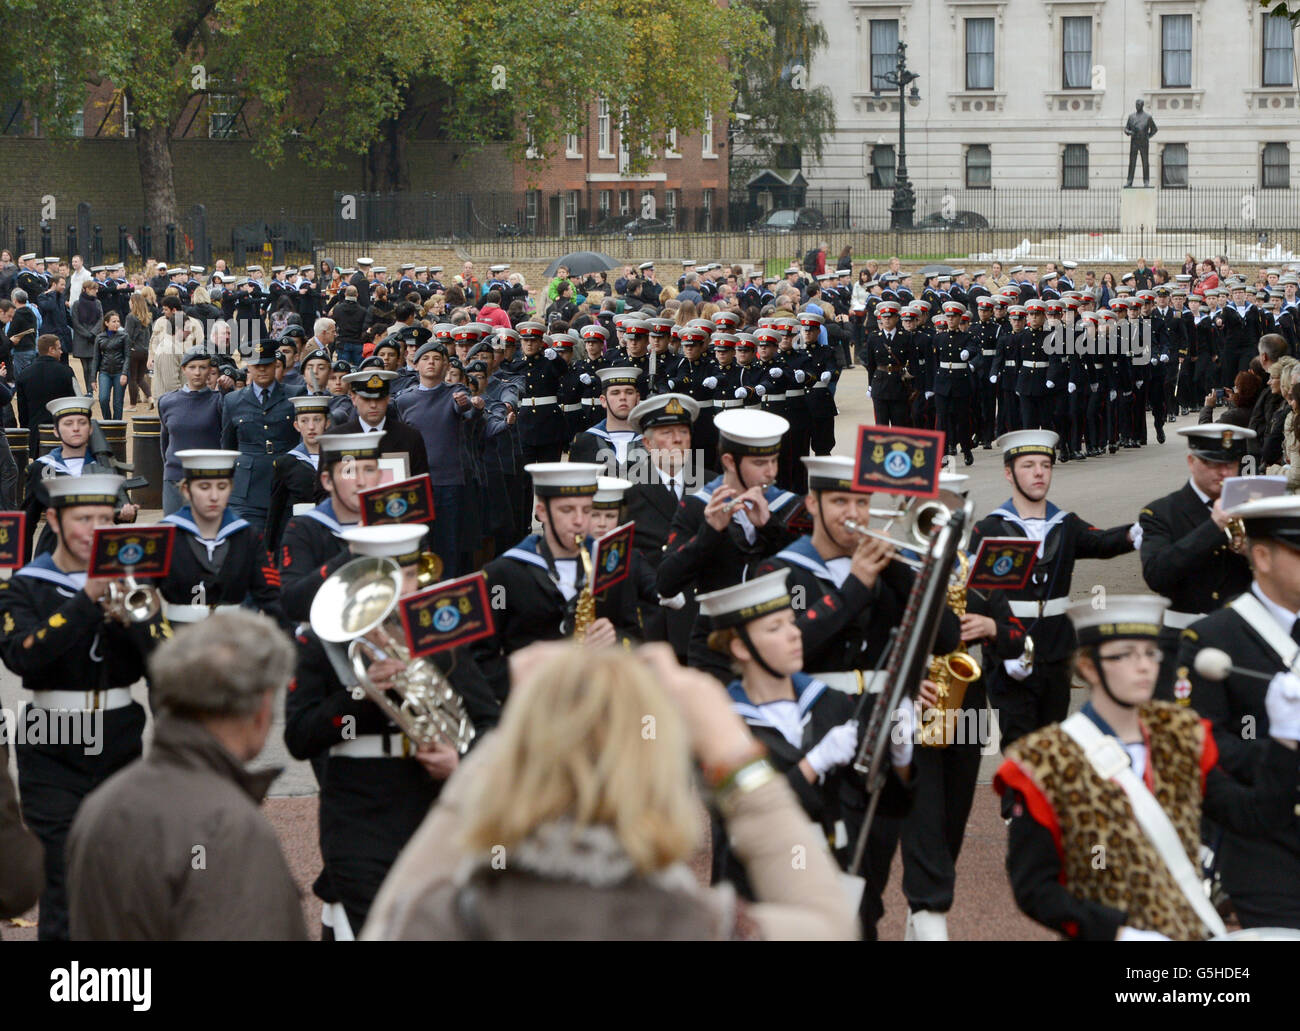 Les cadets quittent la parade des gardes à cheval tandis que les cadets de la Marine participent à une parade de la journée de Trafalgar, de la parade des gardes à cheval à Trafalgar Square à Londres. Banque D'Images